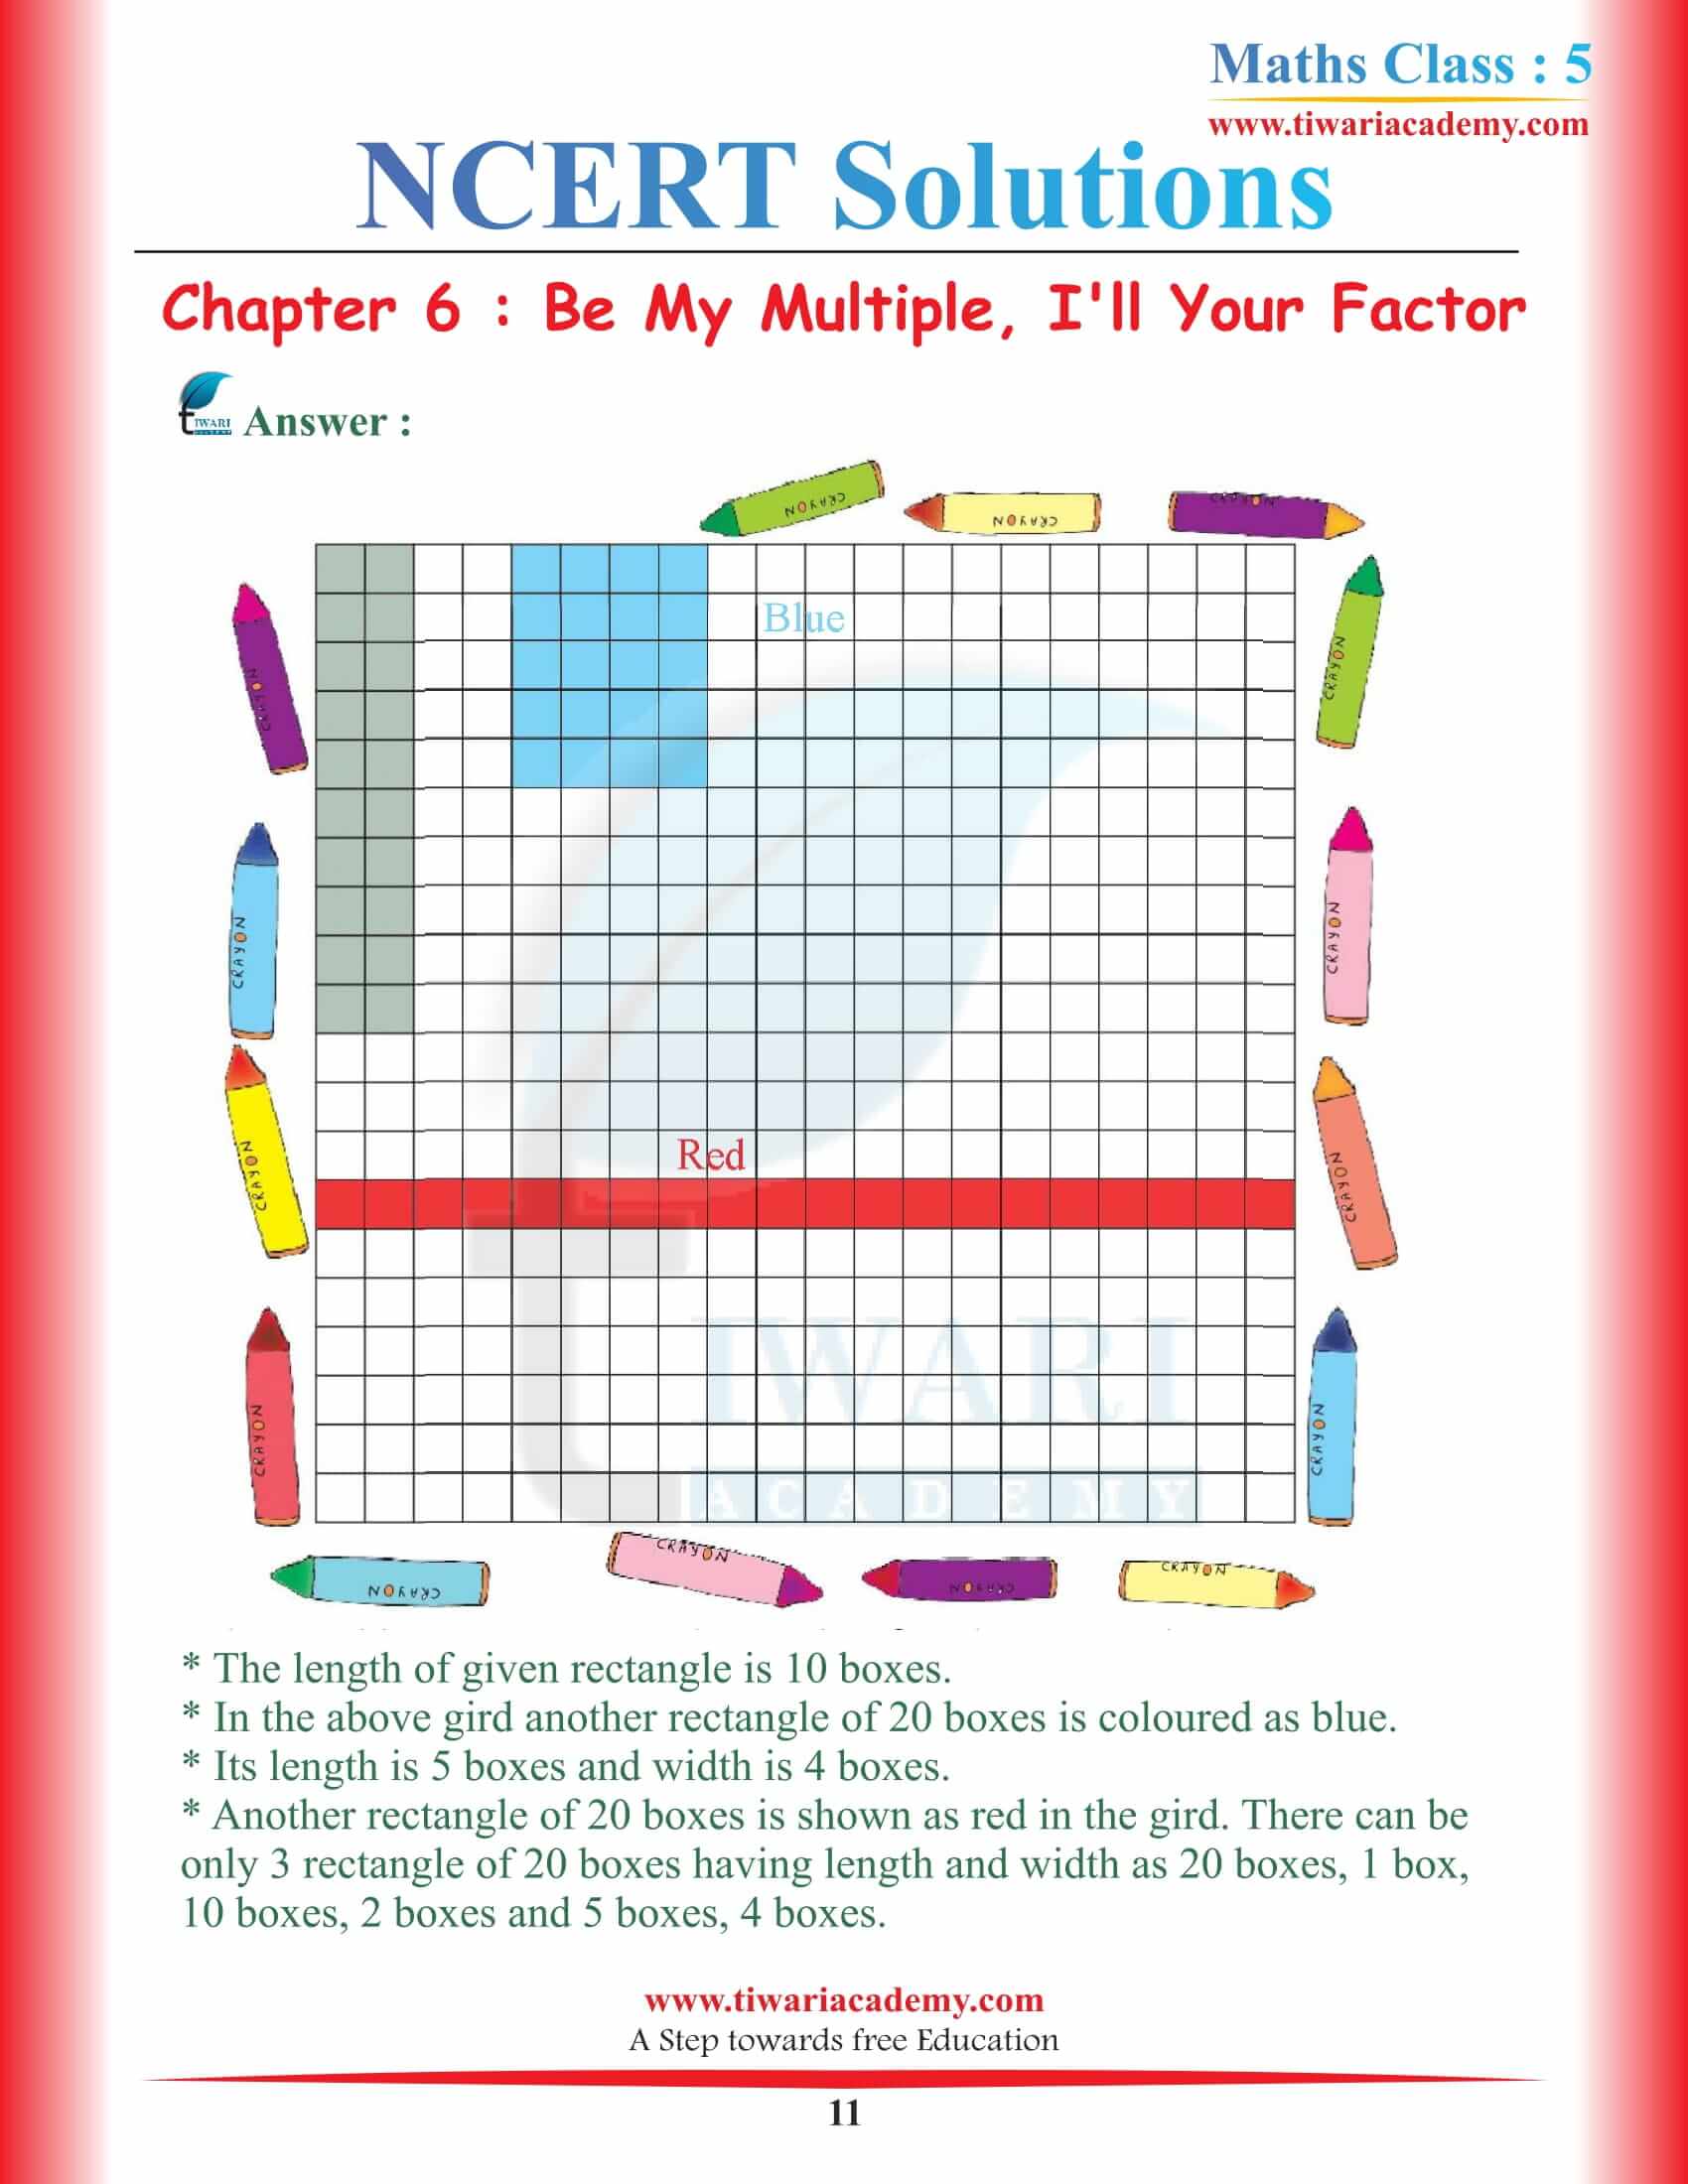 Class 5 Maths Chapter 6 Solutions NCERT